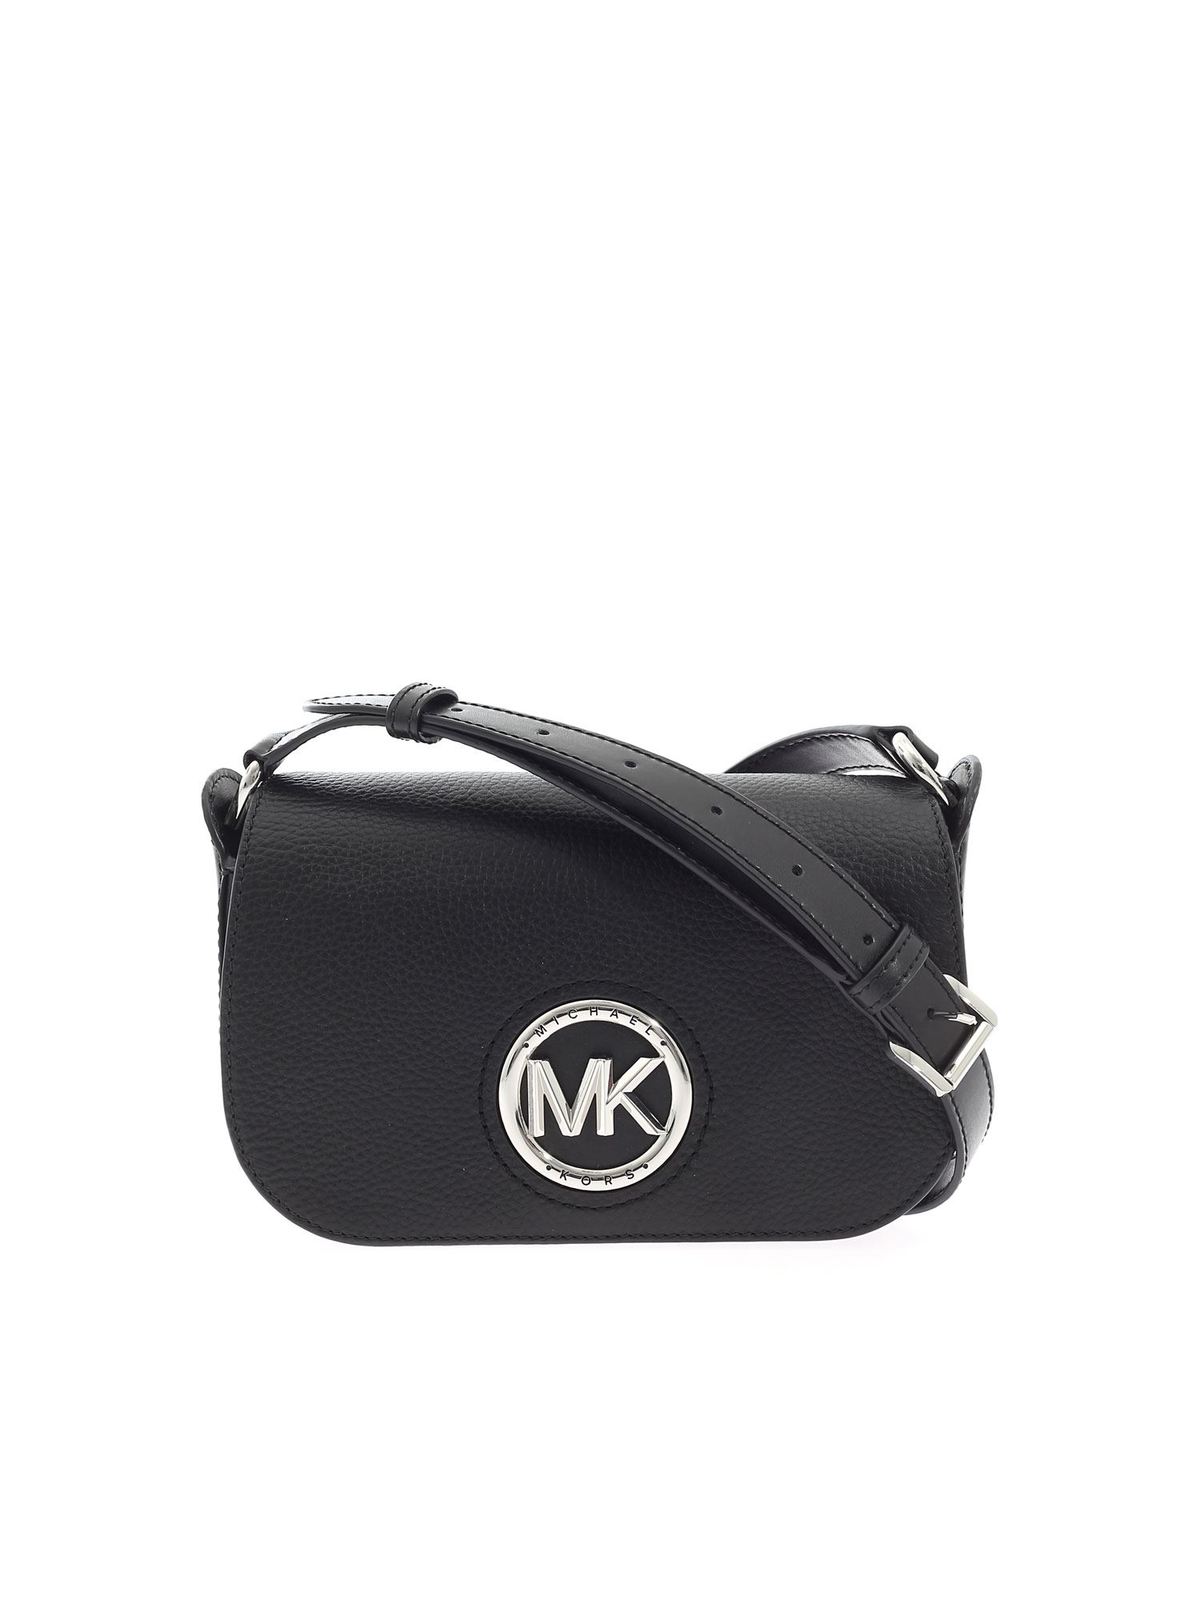 michael kors bag with mk logo